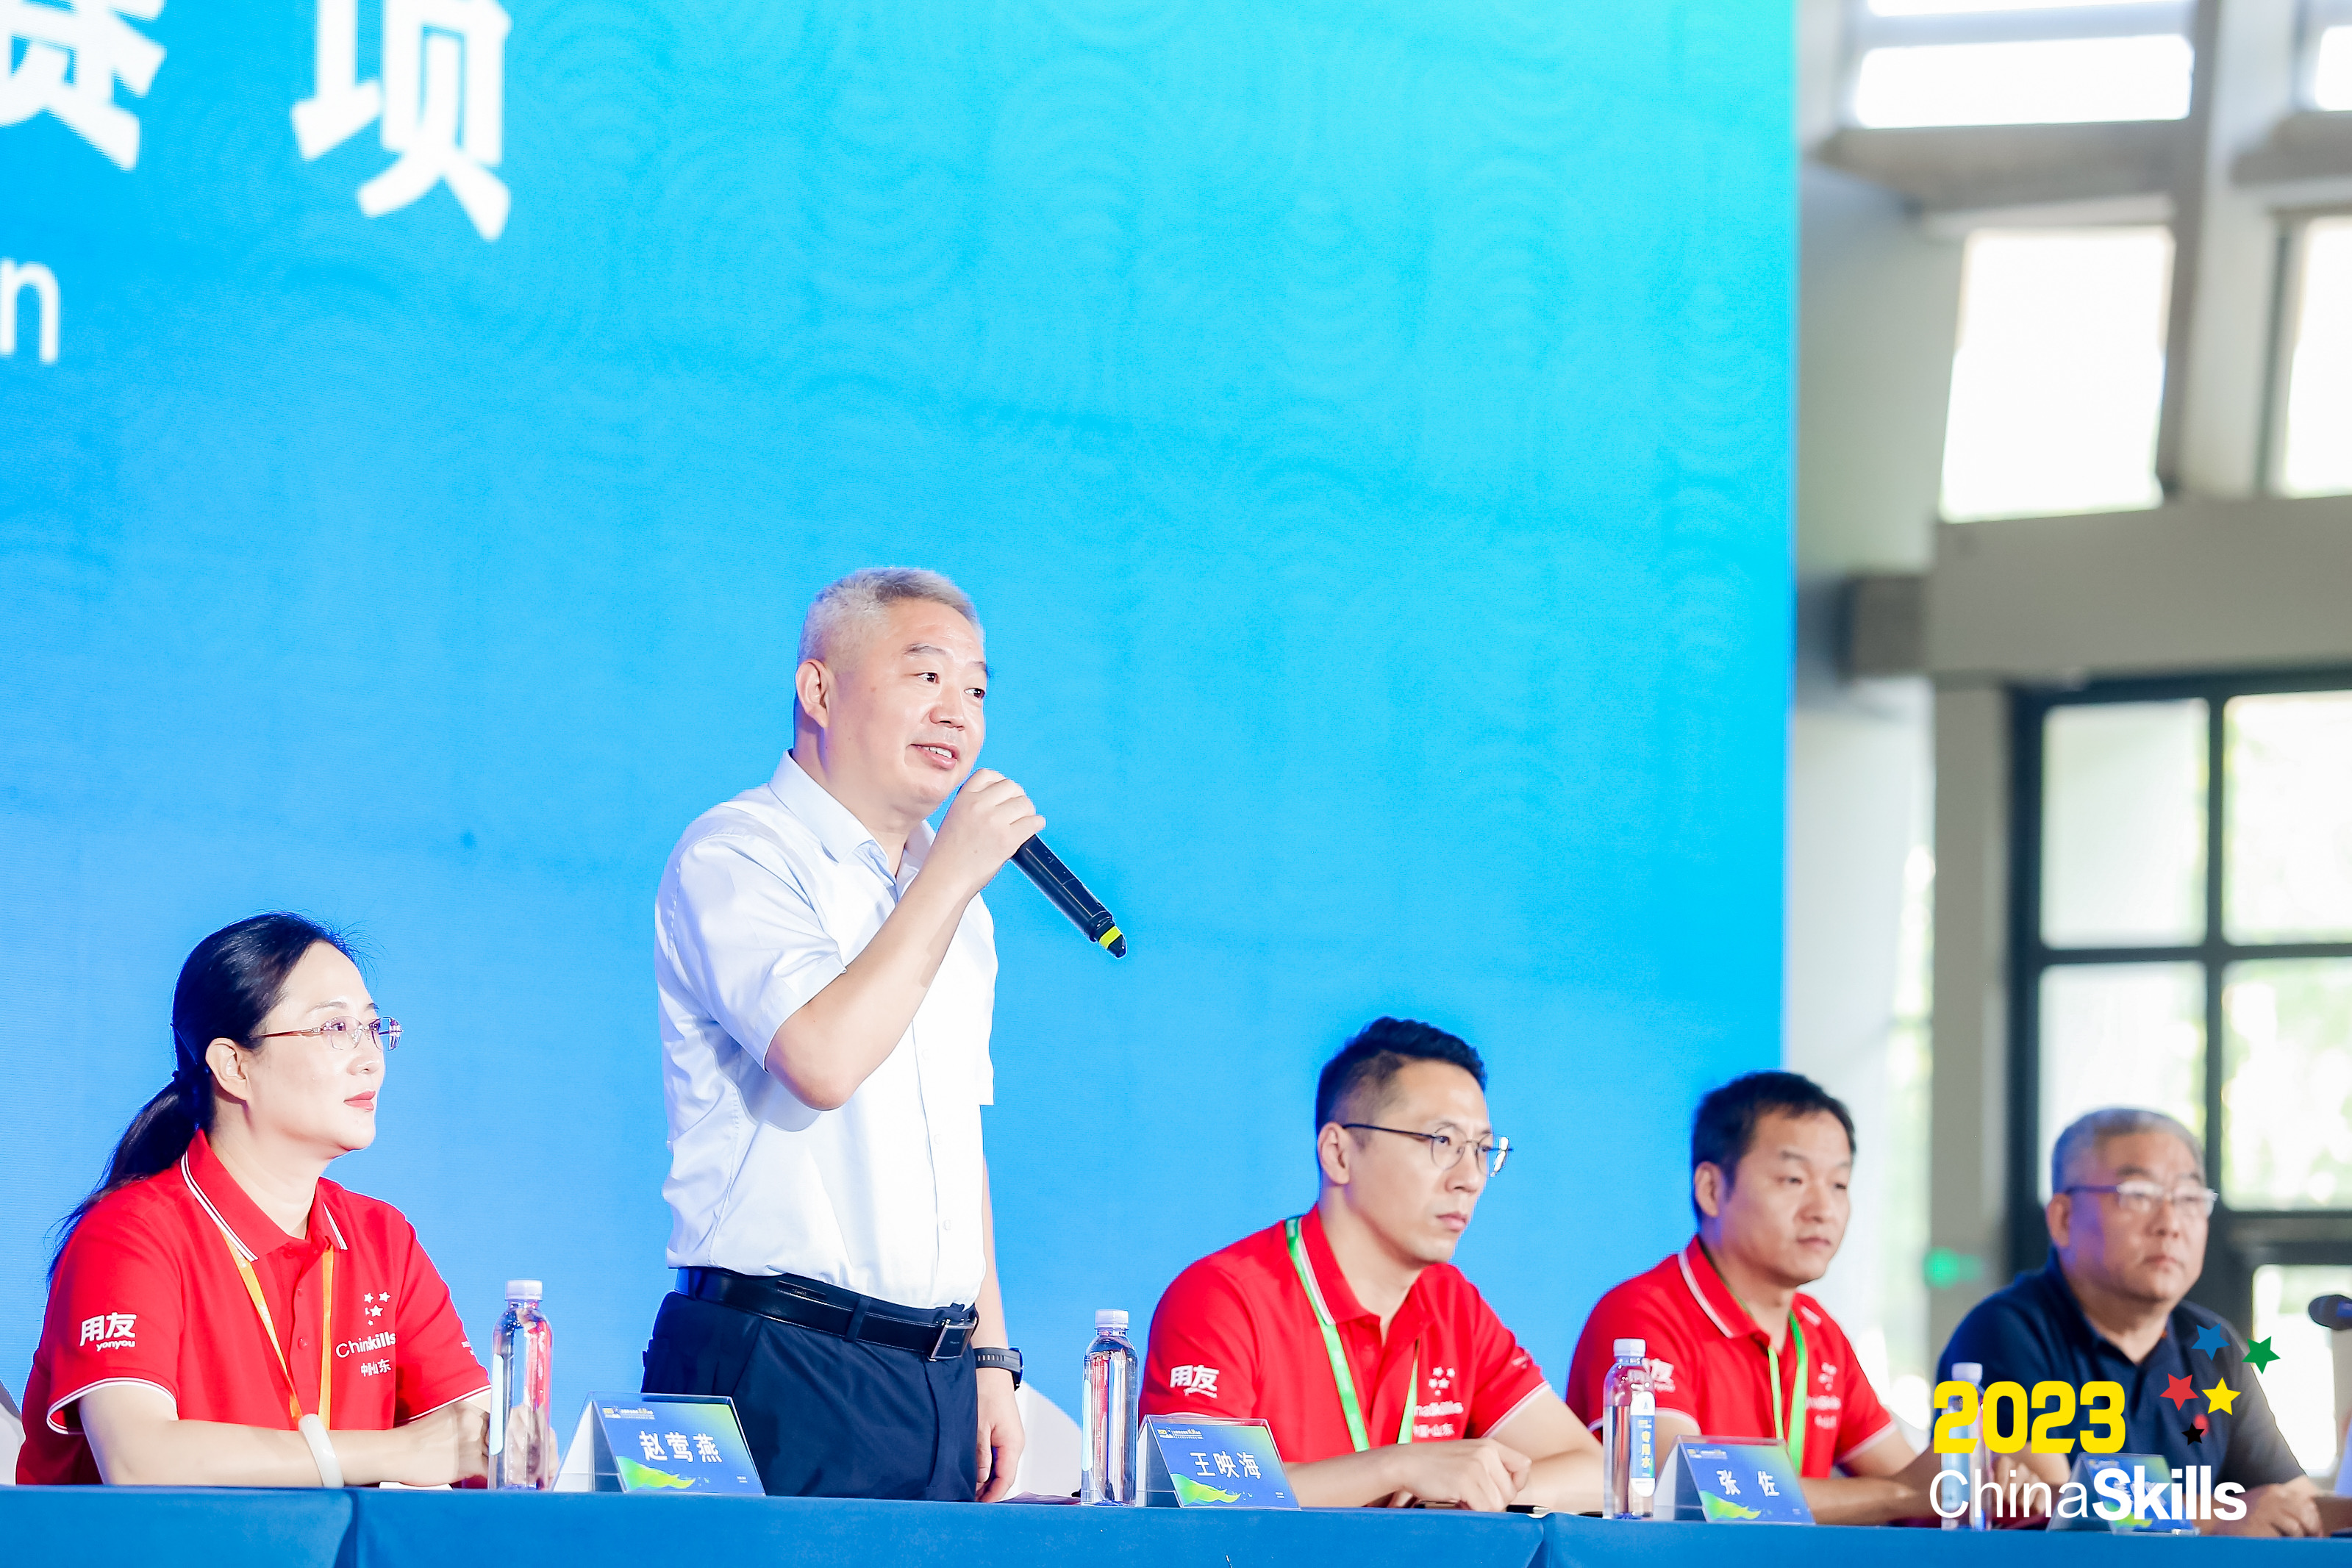 临沂市政府党组成员、副市长王映海出席开赛式并宣布比赛正式开始